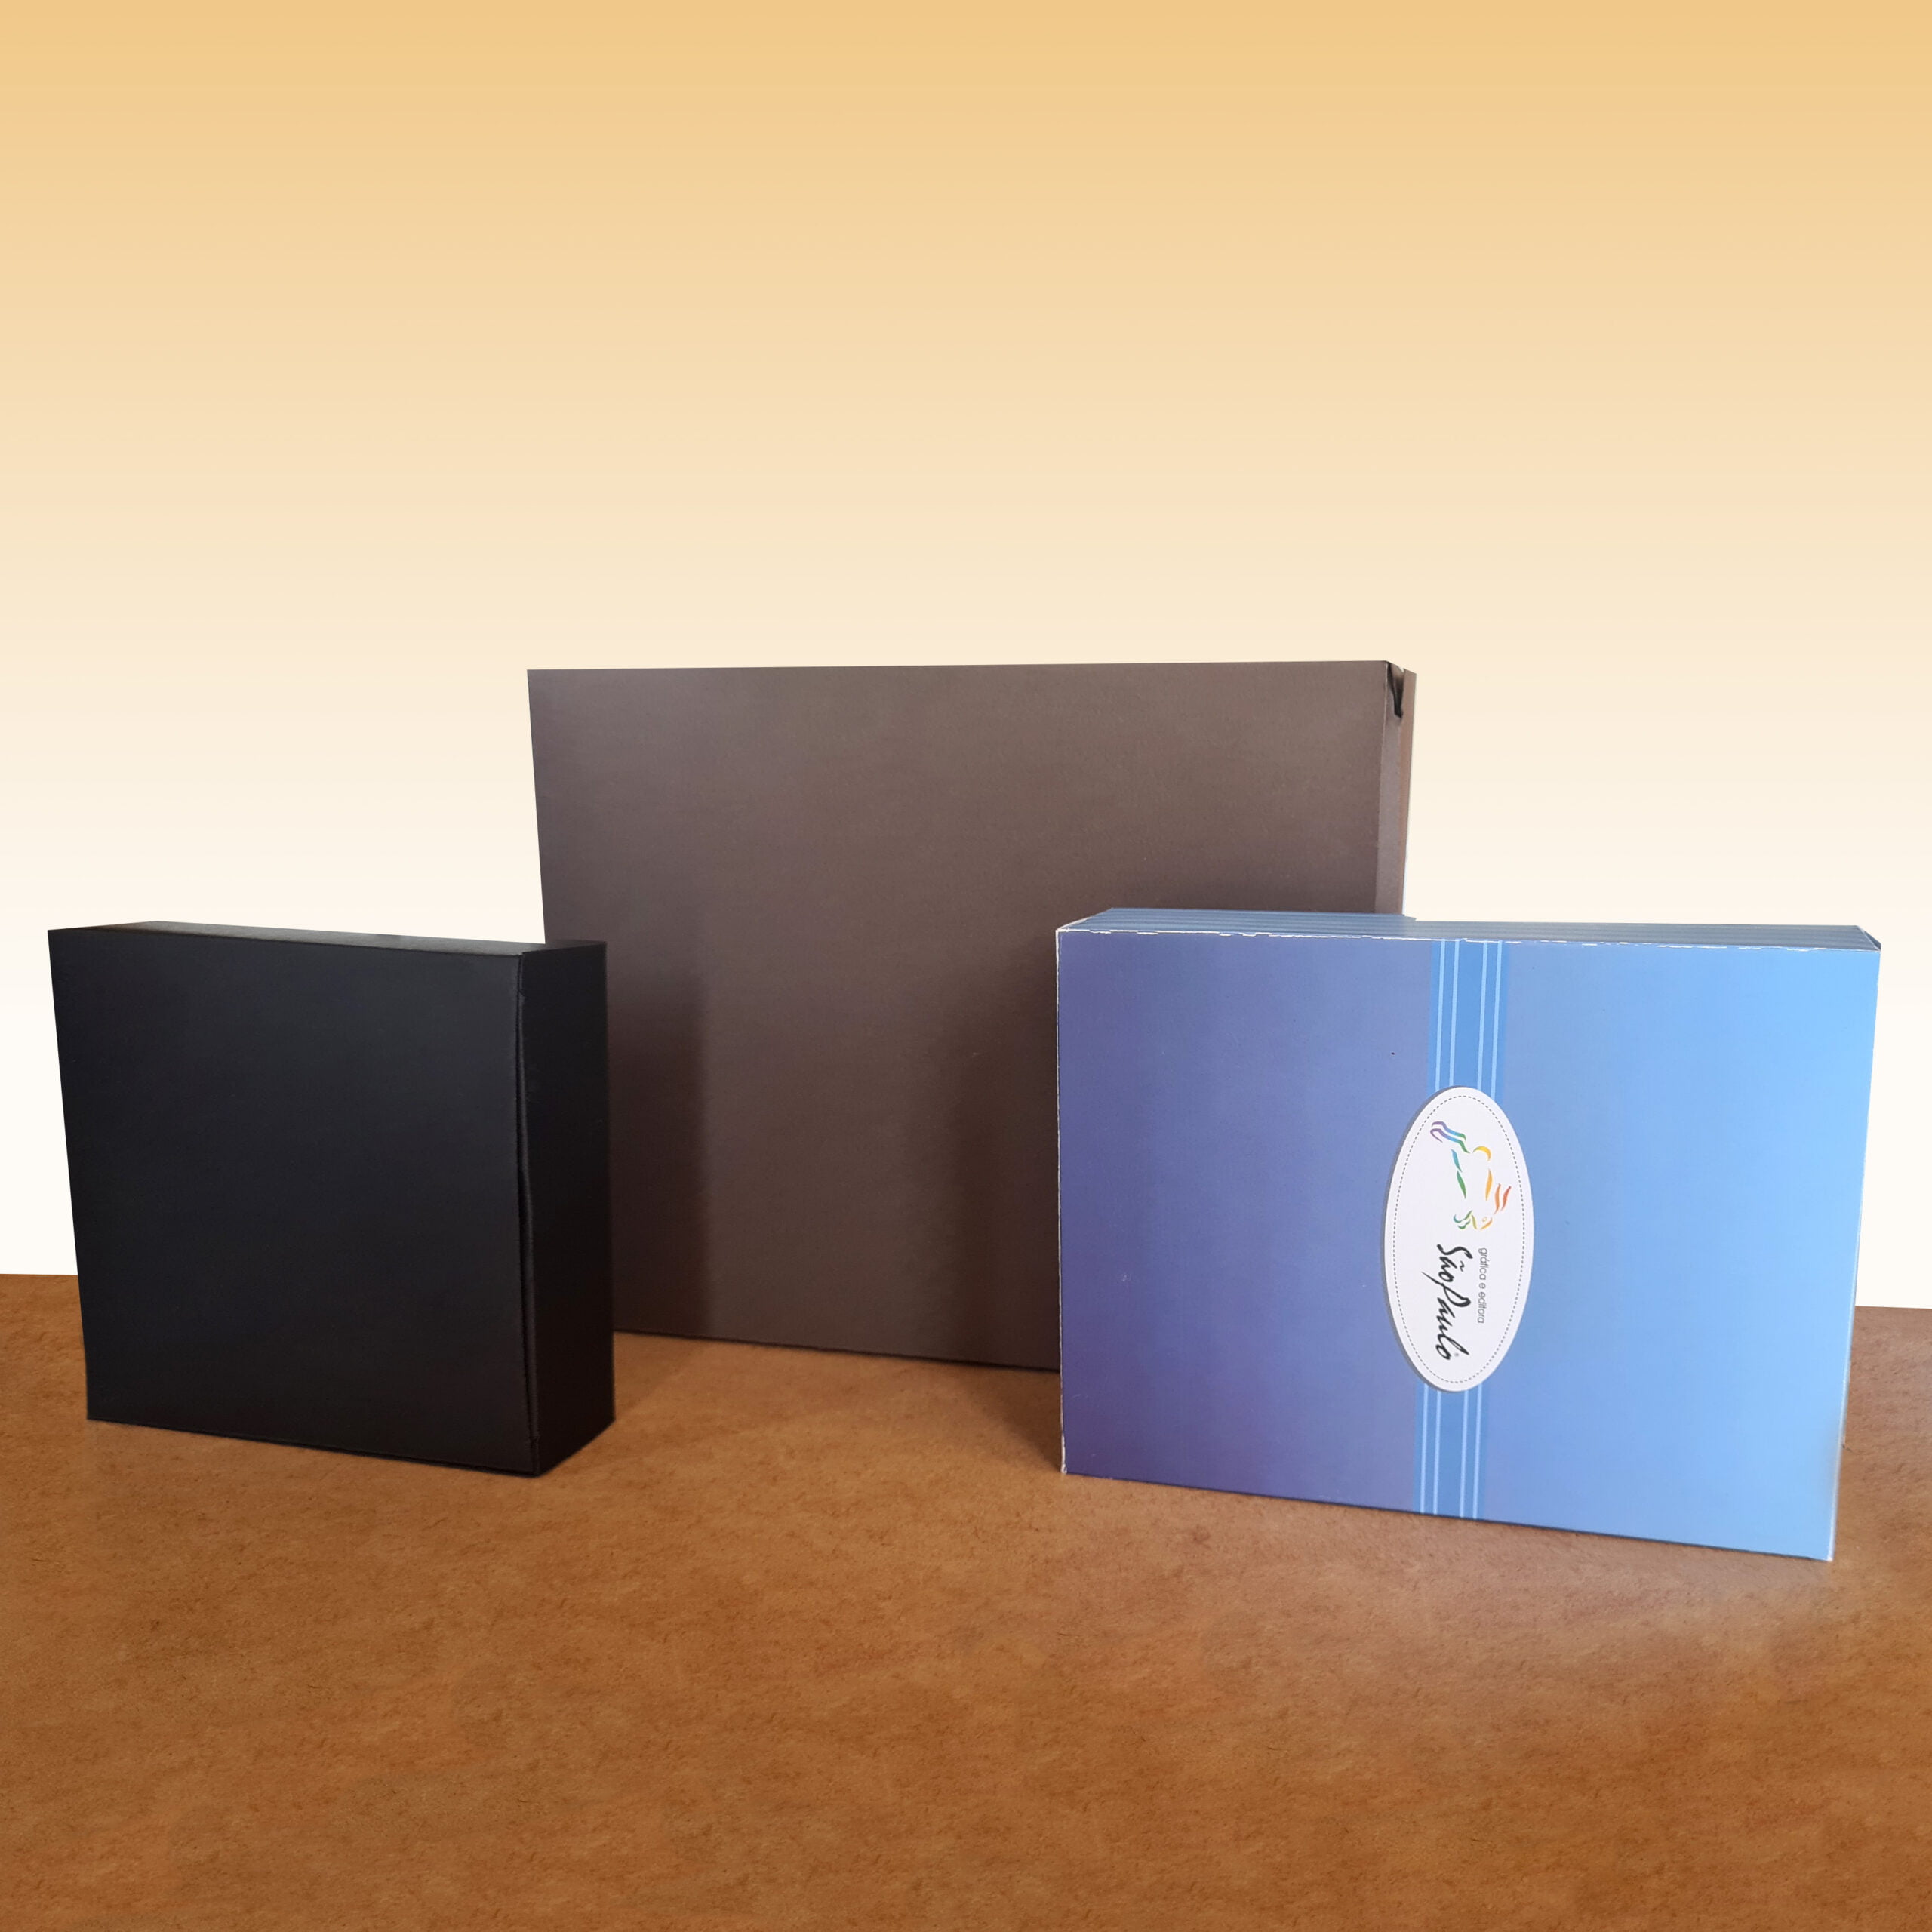 Caixa para Cartucho Presente Personalizado, três caixas sobre uma mesa marrom ao fundo dourado